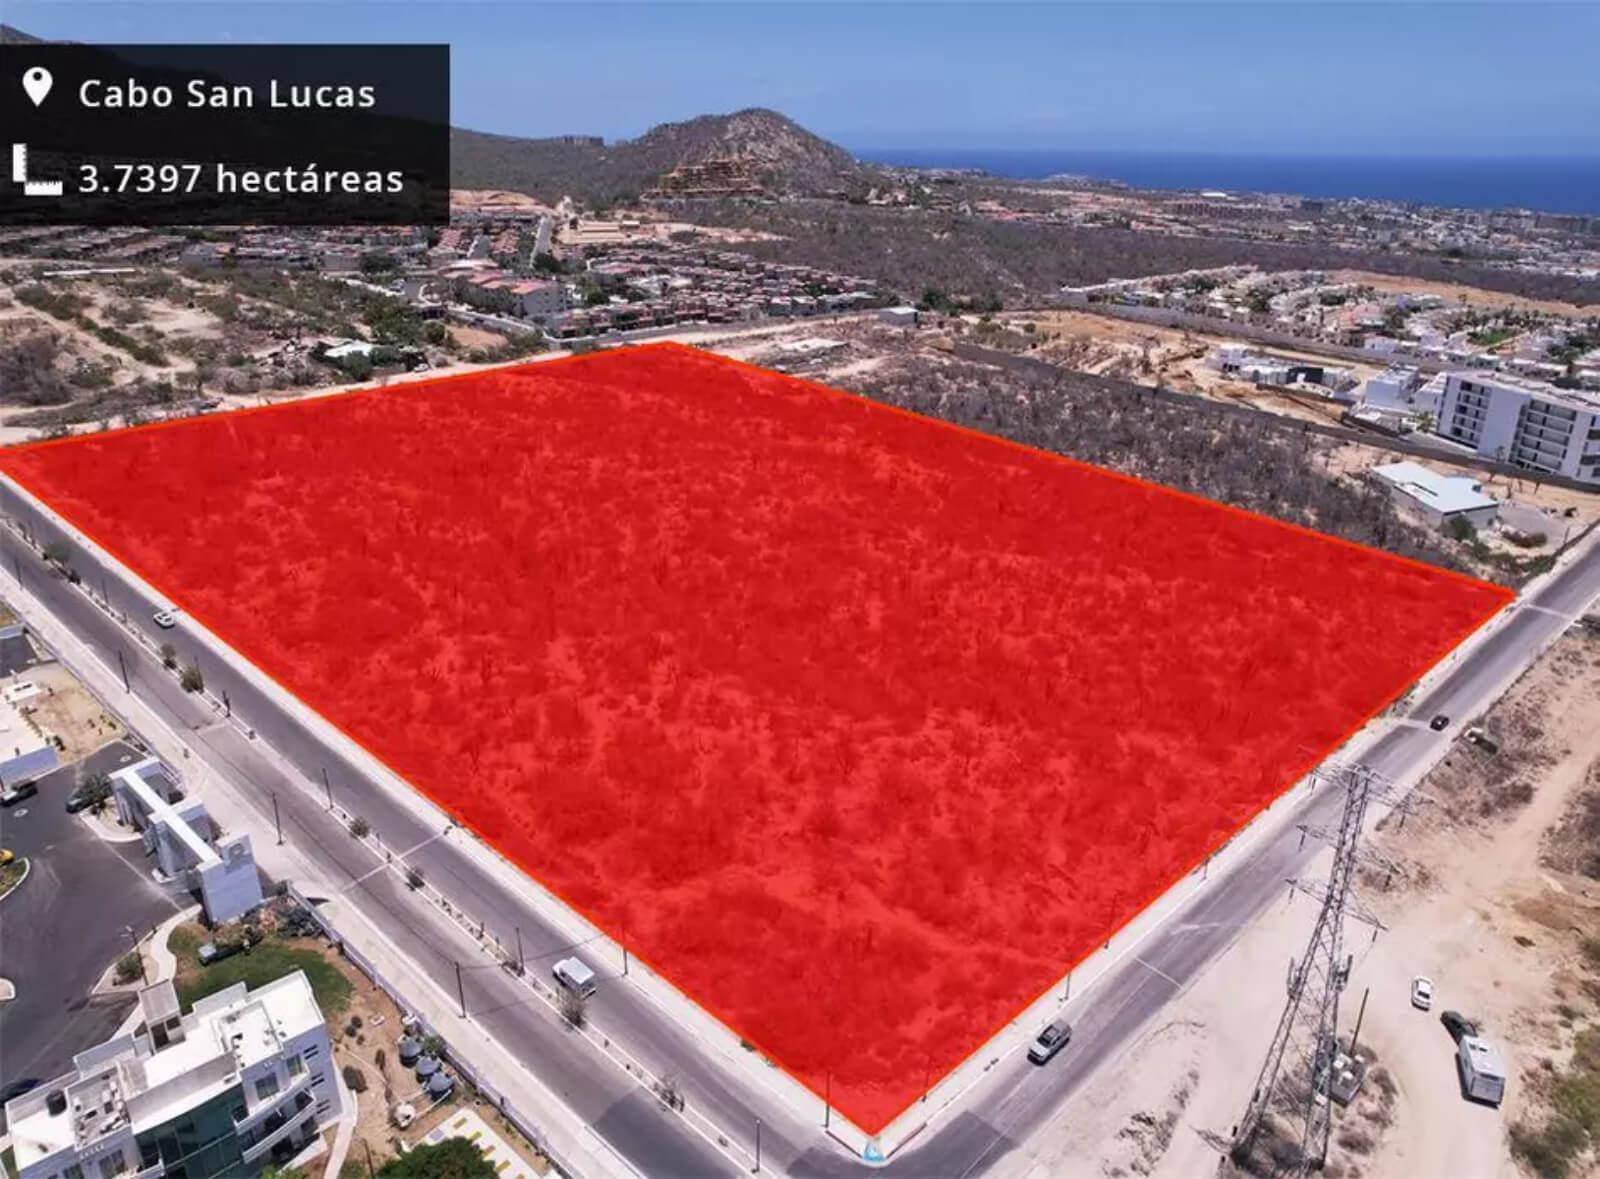 Venta de hectáreas con vista al mar, uso de suelo multifamiliar, en venta en El Tezal, Cabo San Lucas.